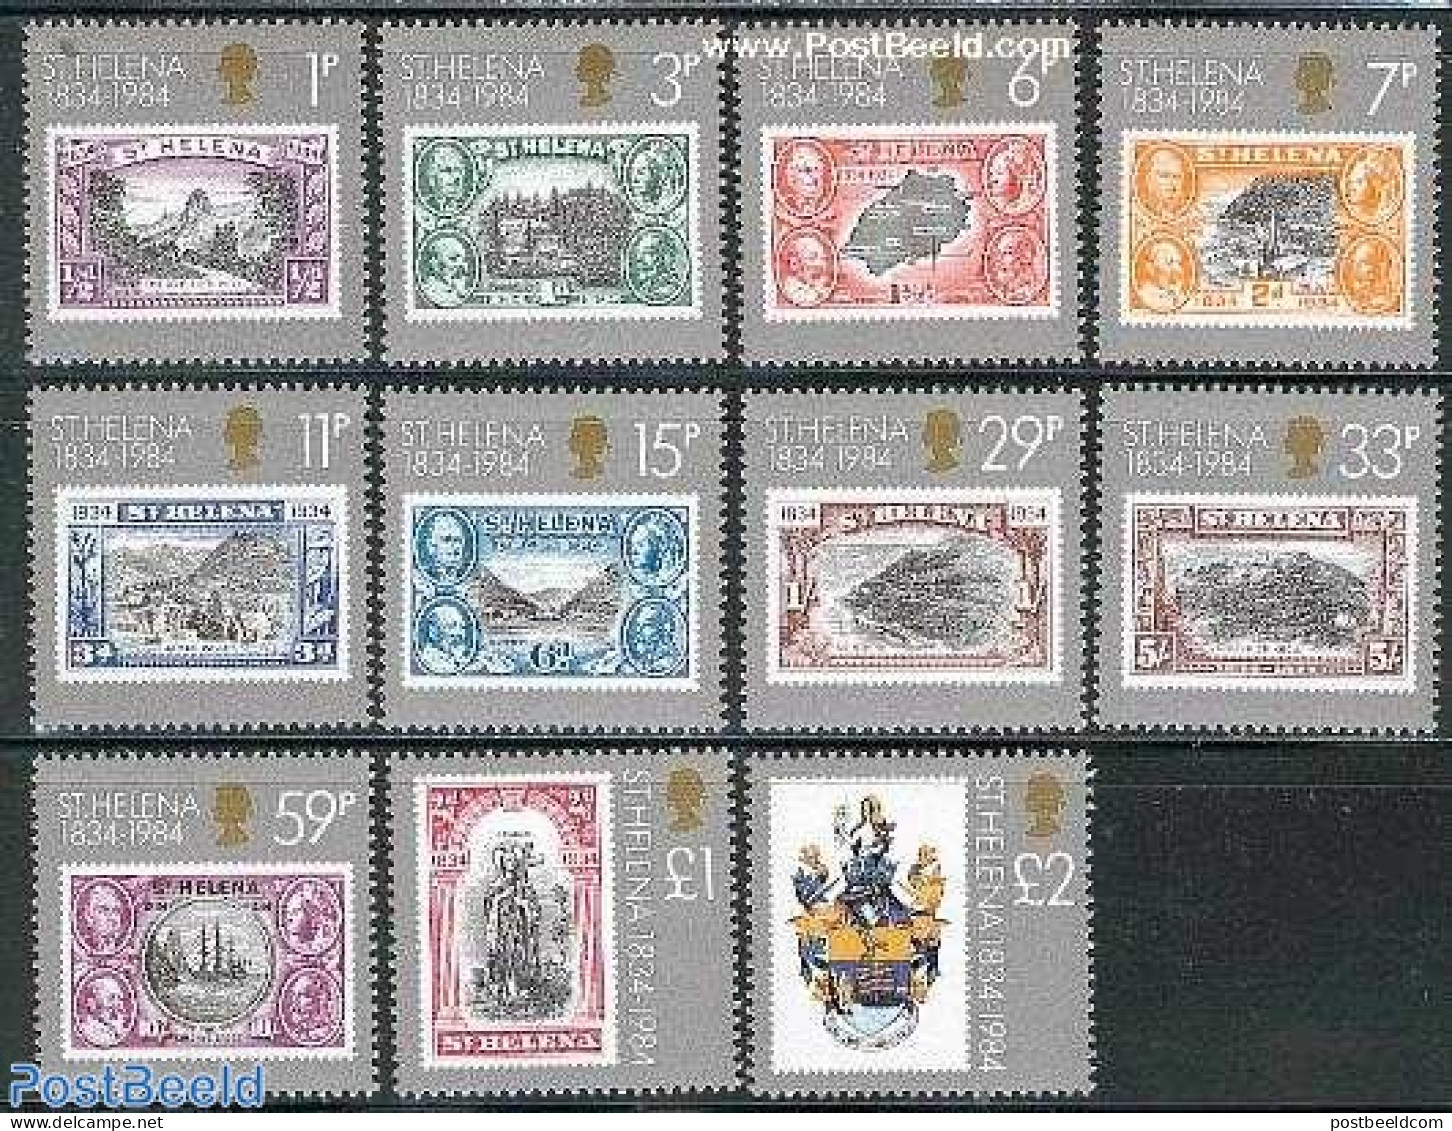 Saint Helena 1984 Colony 150th Anniversary 11v, Unused (hinged), Stamps On Stamps - Briefmarken Auf Briefmarken